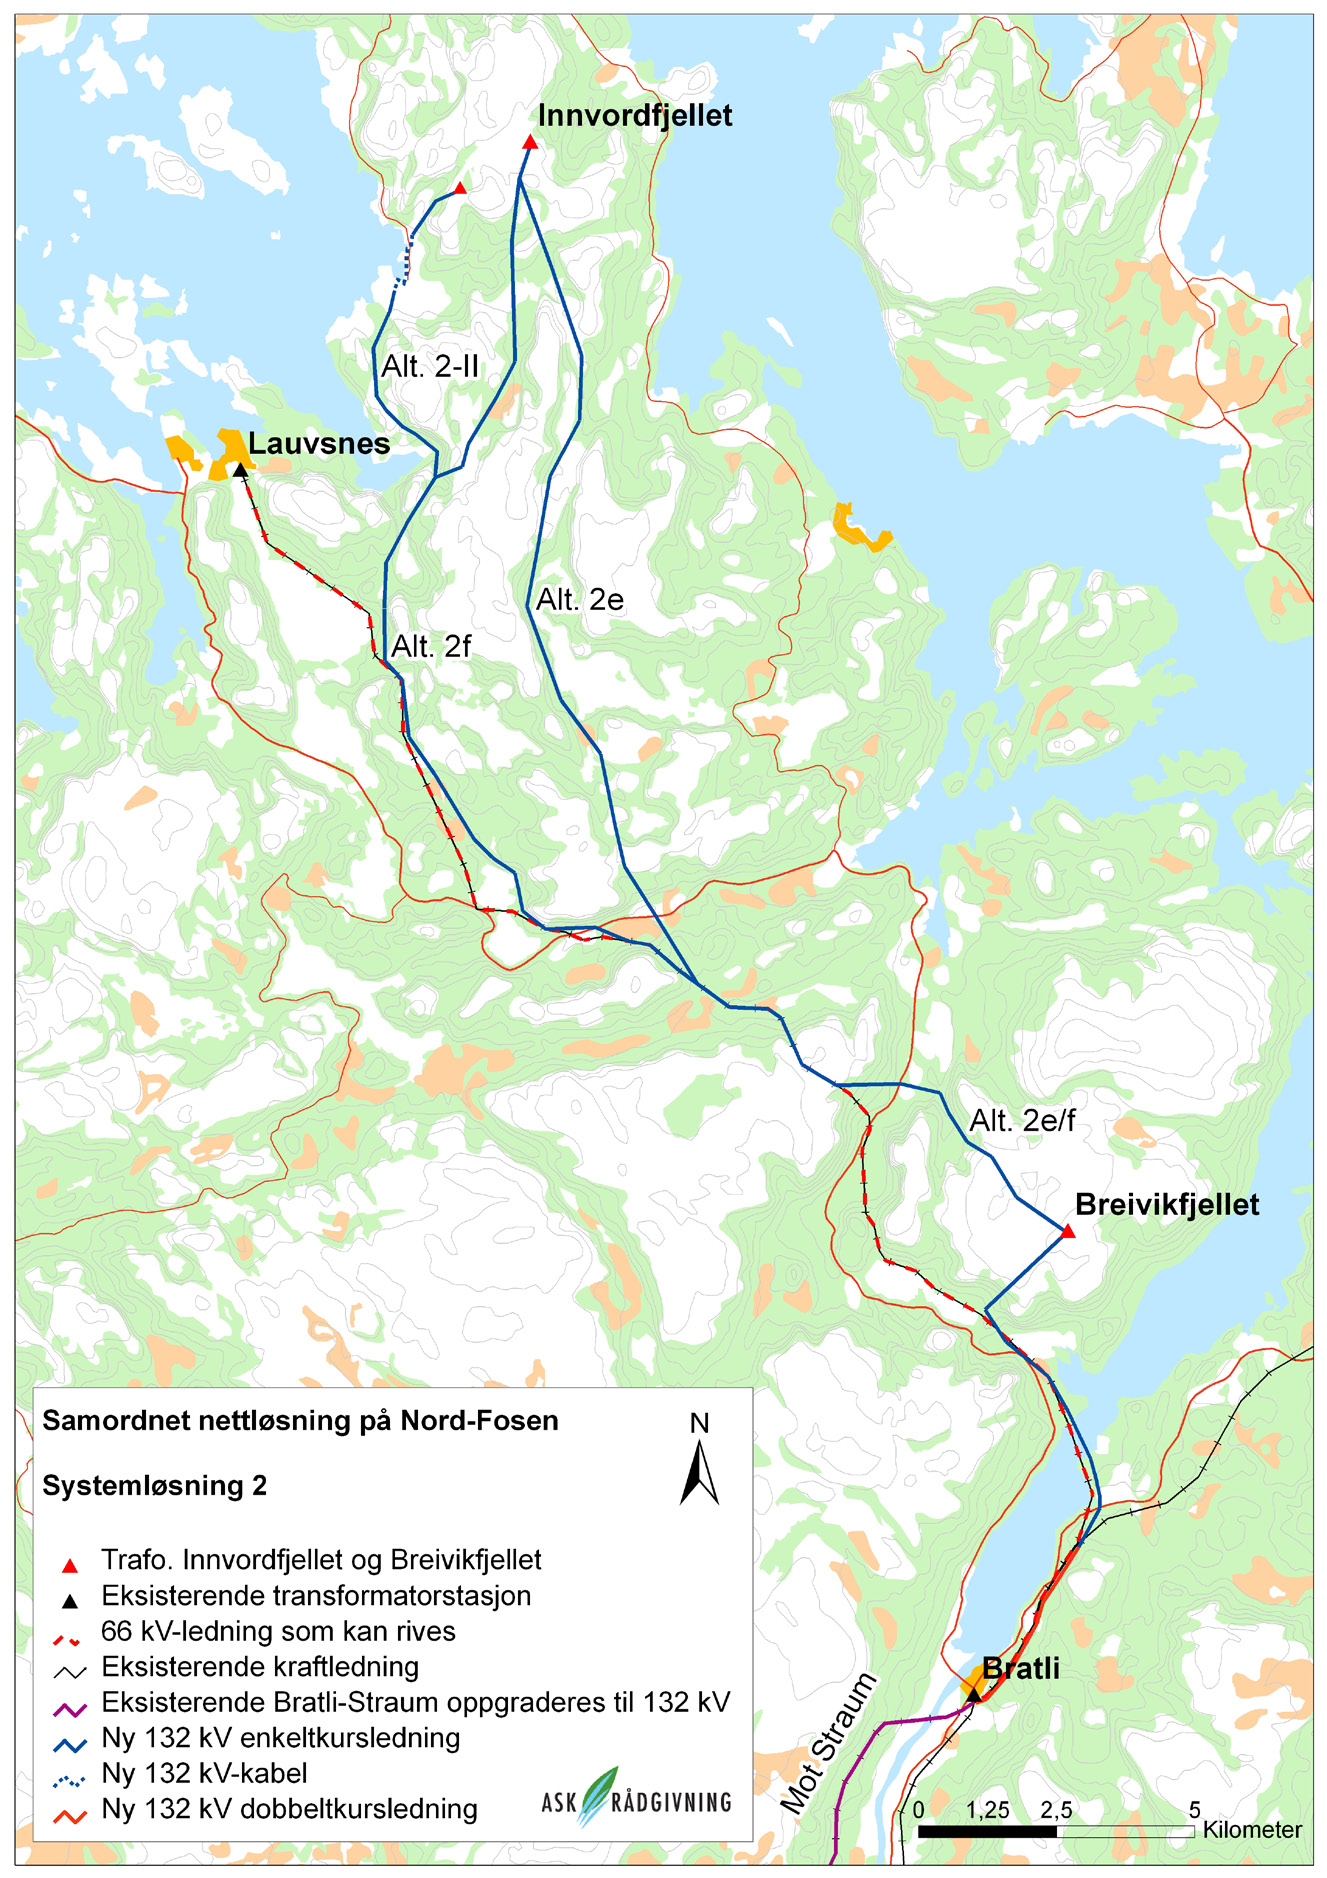 Systemløsning 2 Det bygges en ny 132 kv ledning fra Innvordfjellet ned mot Breivikfjellet.